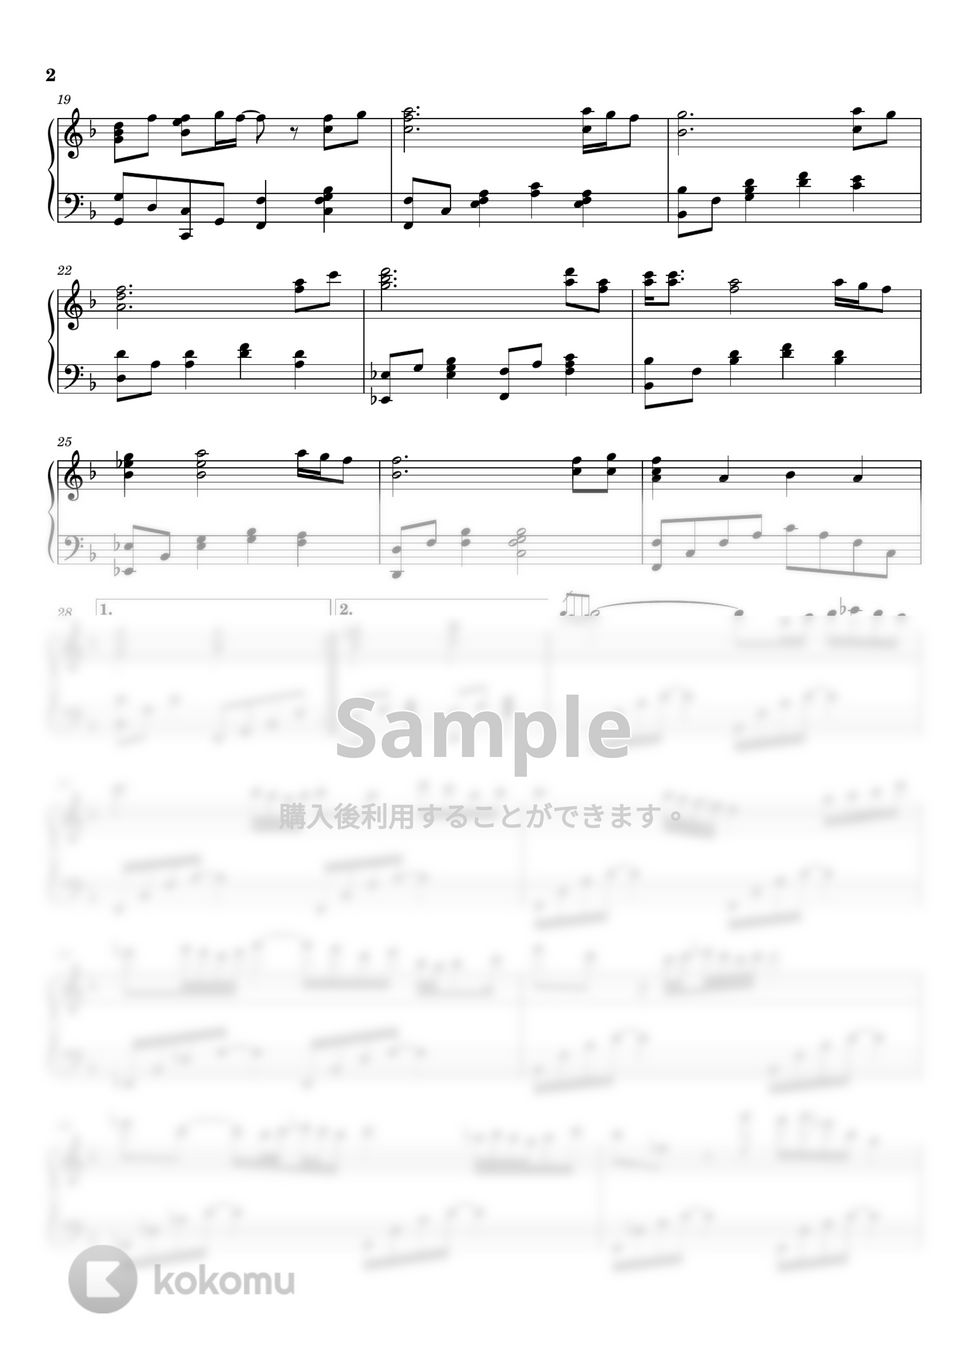 本名陽子 - カントリーロード (ピアノ上級ソロ) by pianon